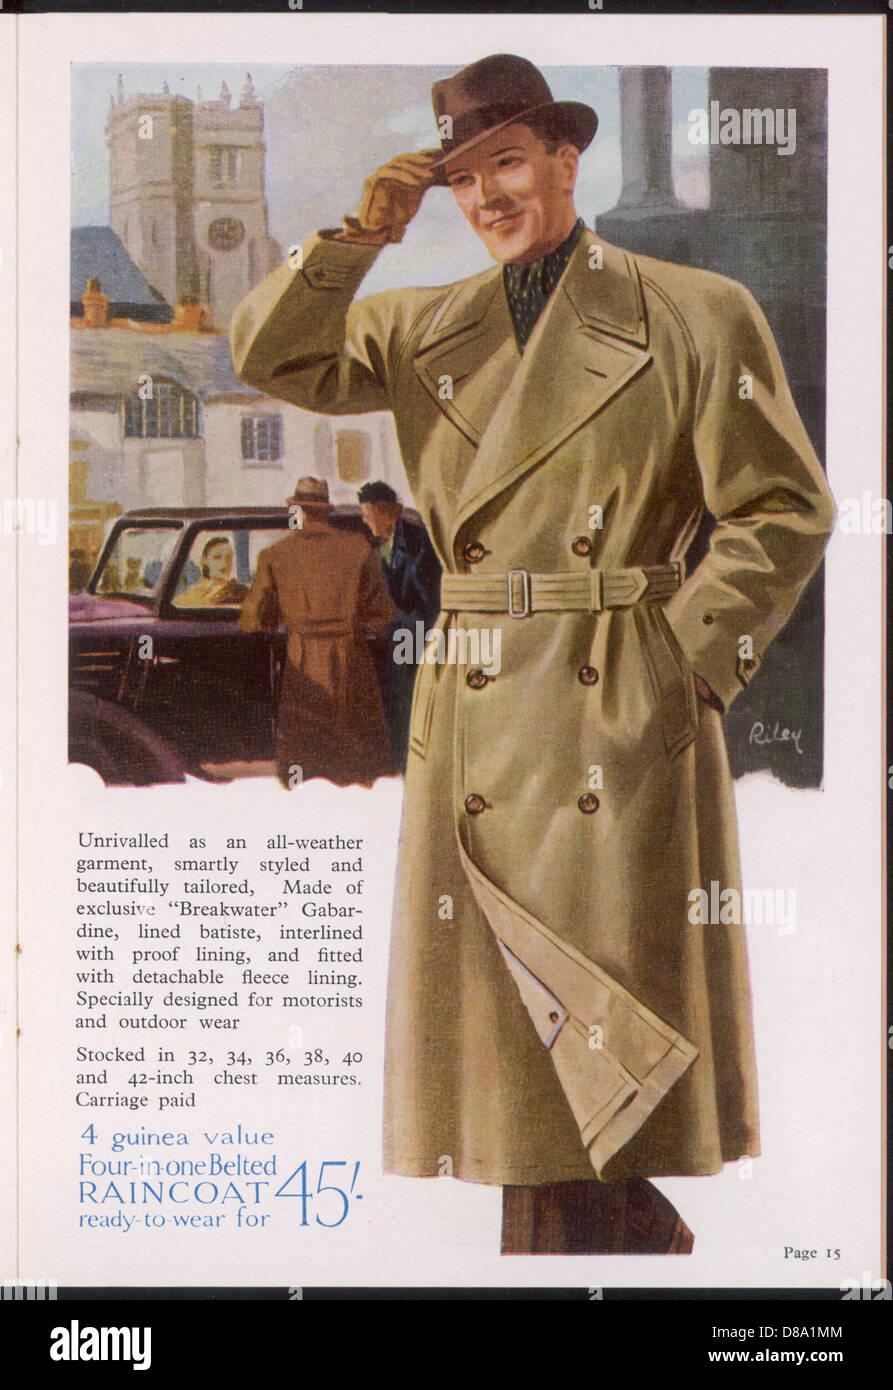 Vintage Chanel Coat in Beige Cashmere Wool — singulié